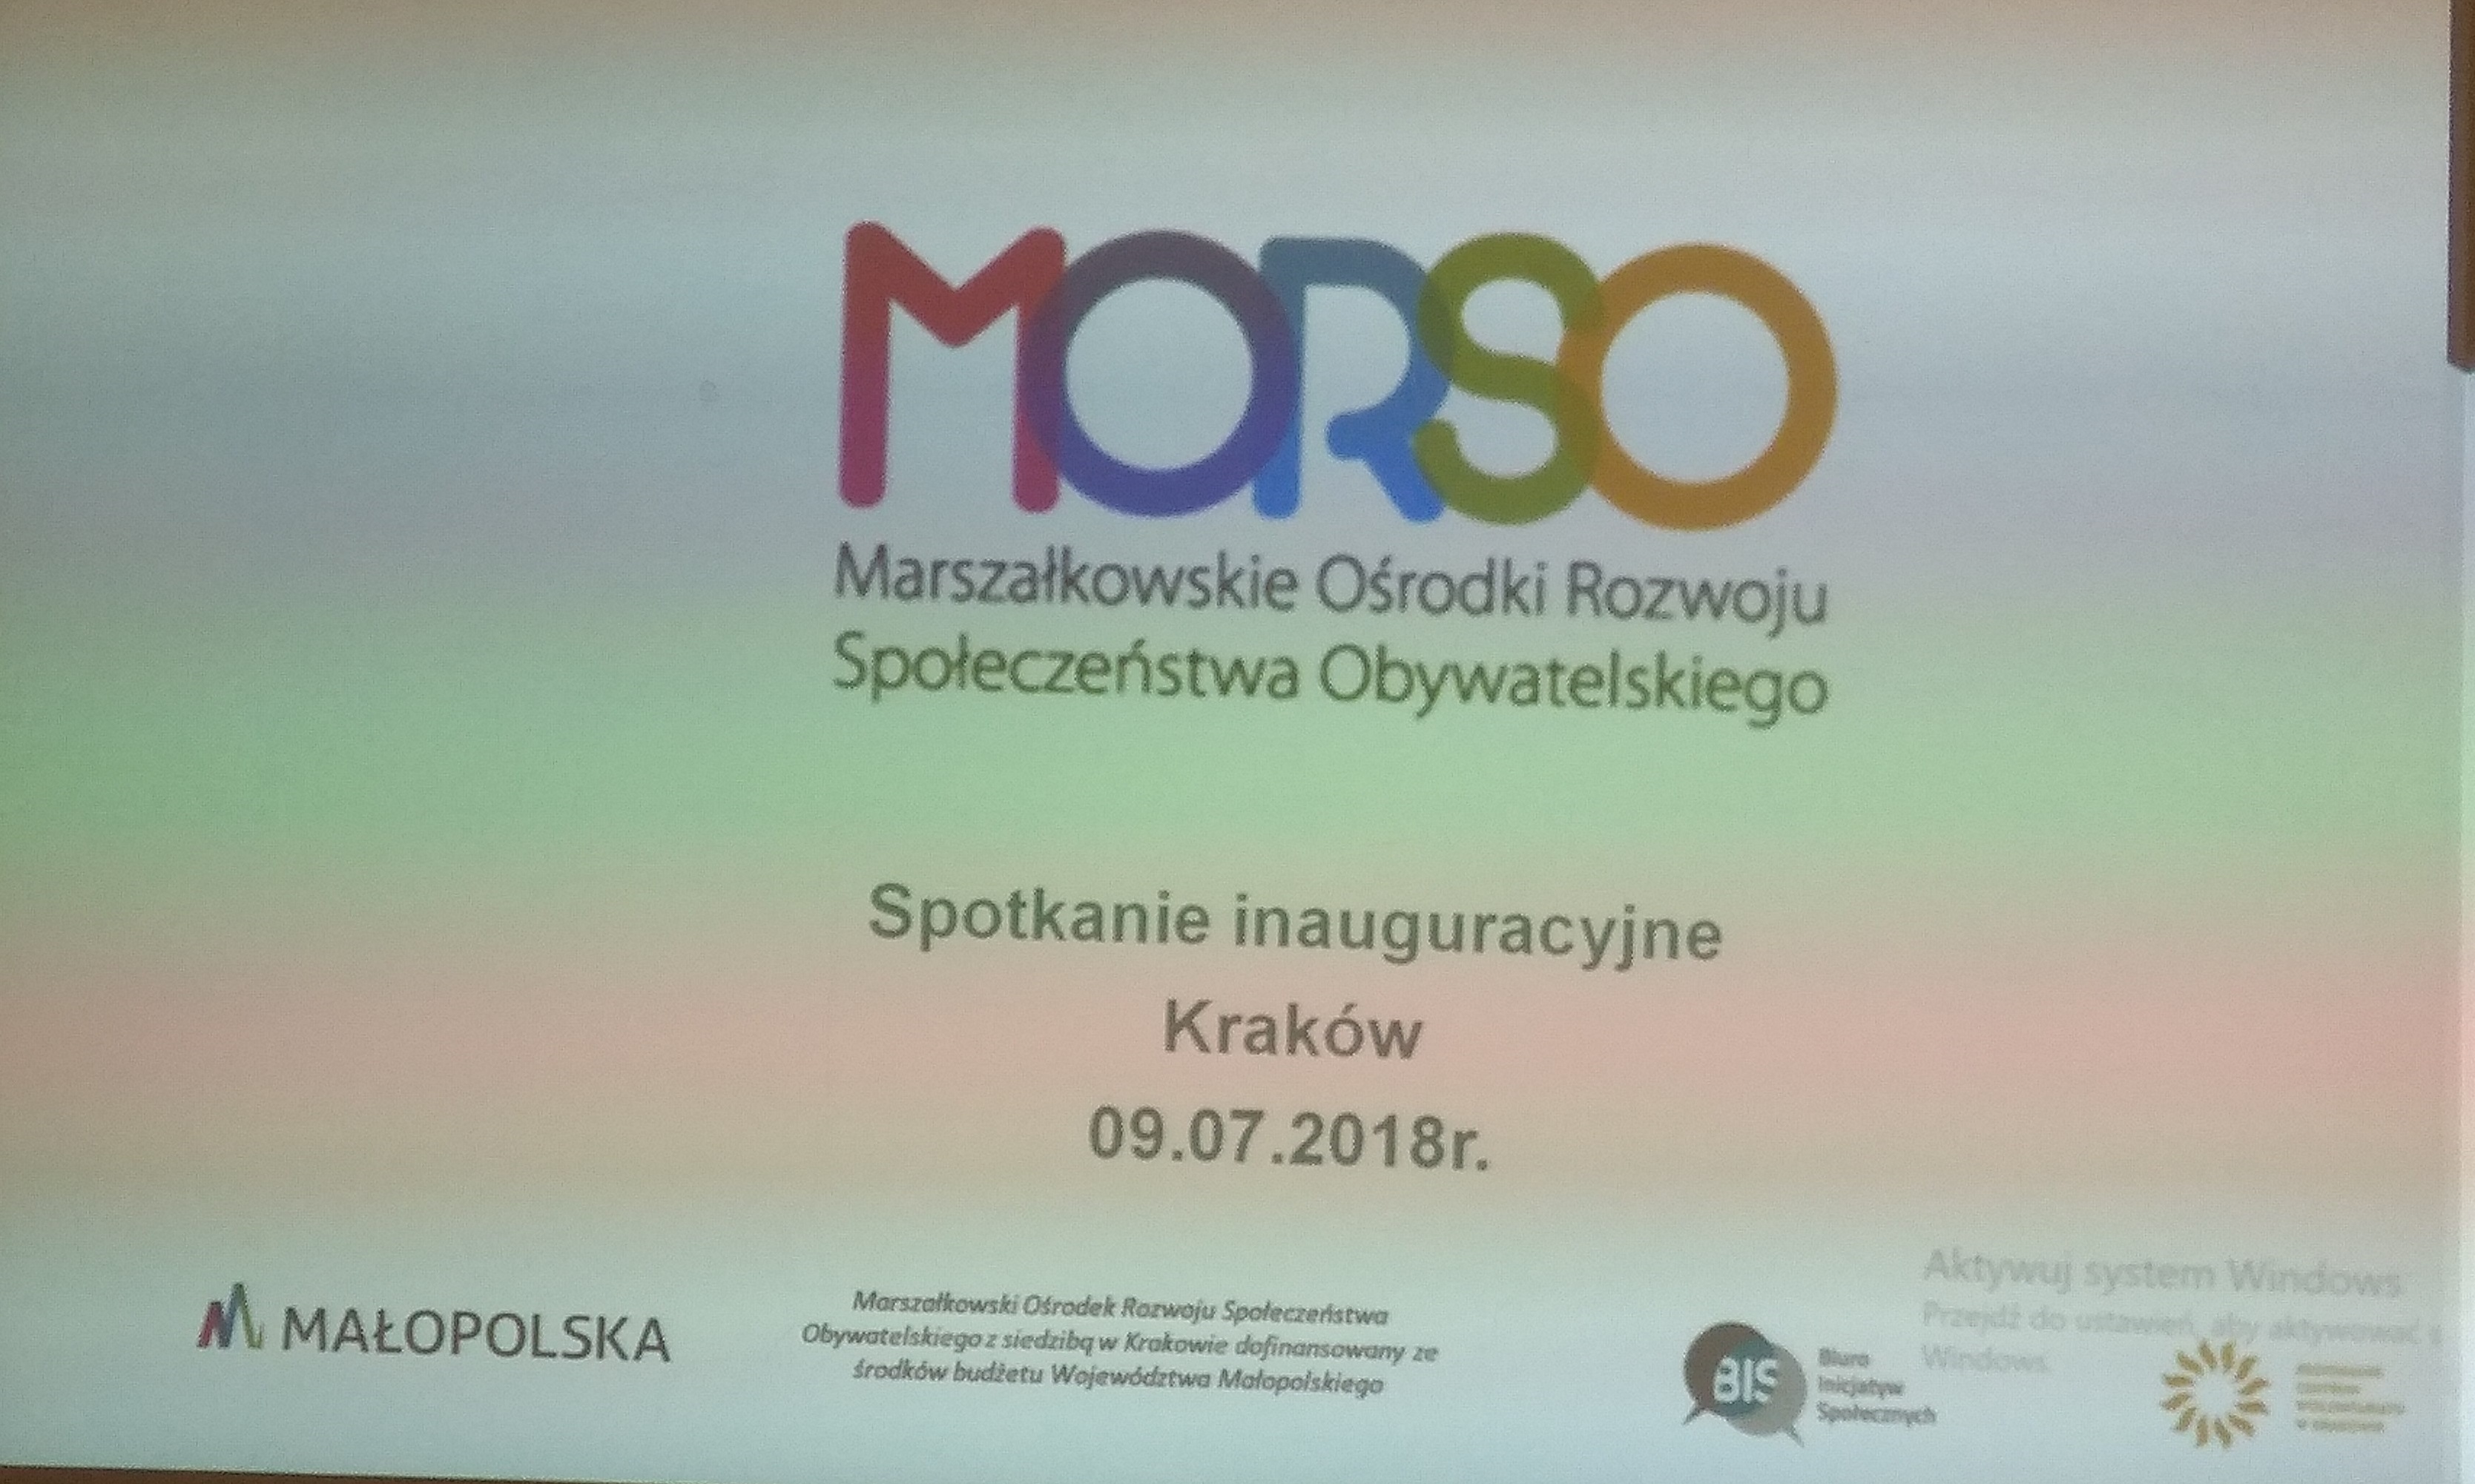 Spotkanie inauguracyjne Marszałkowskiego Ośrodka Rozwoju Organizacji Pozarządowych (MORSO) w Krakowie (09.07.2018r)